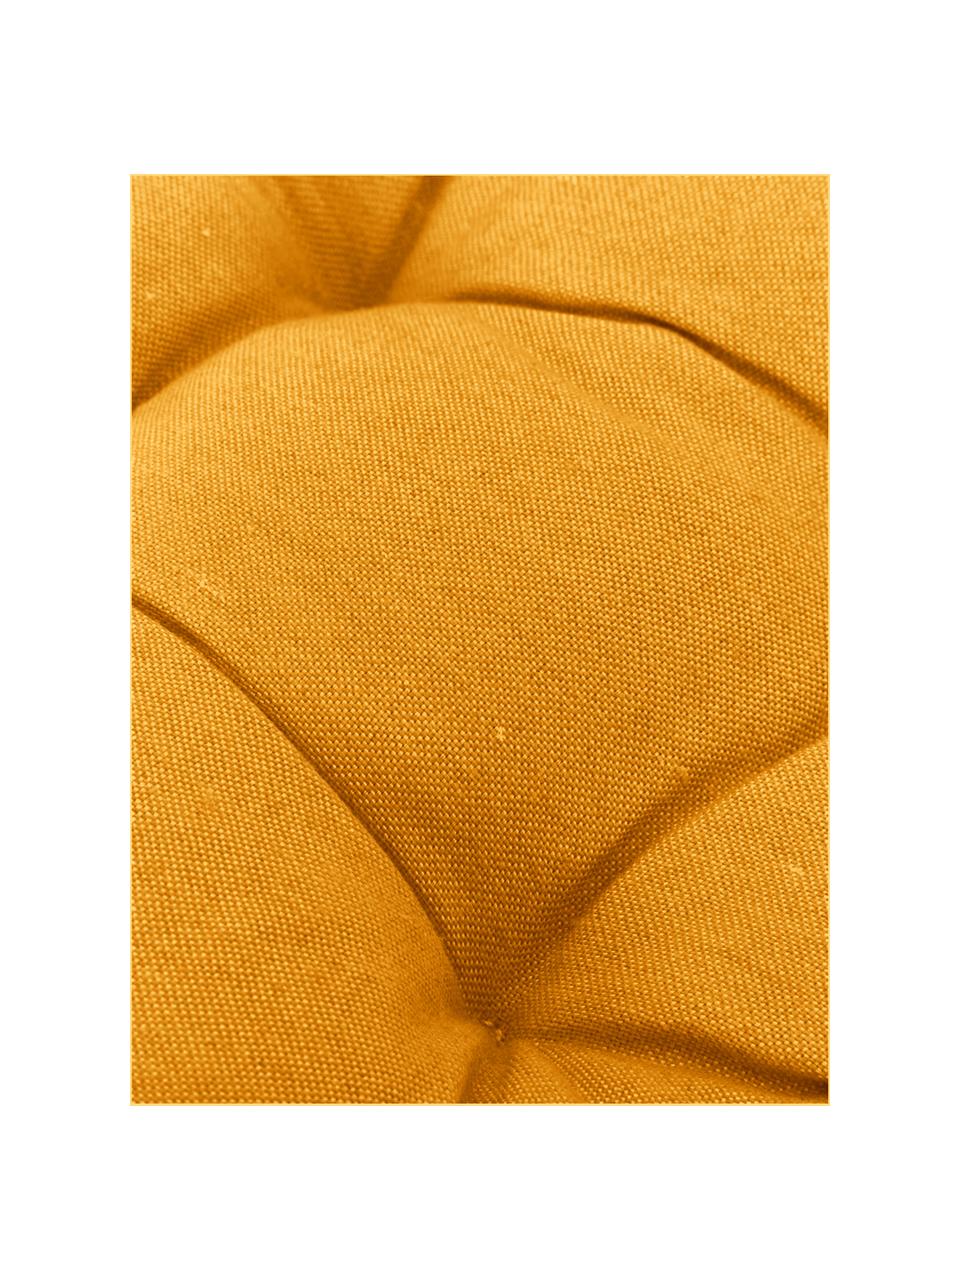 Einfarbiges Sitzkissen Panama in Gelb, Bezug: 50% Baumwolle, 45% Polyes, Gelb, 45 x 45 cm